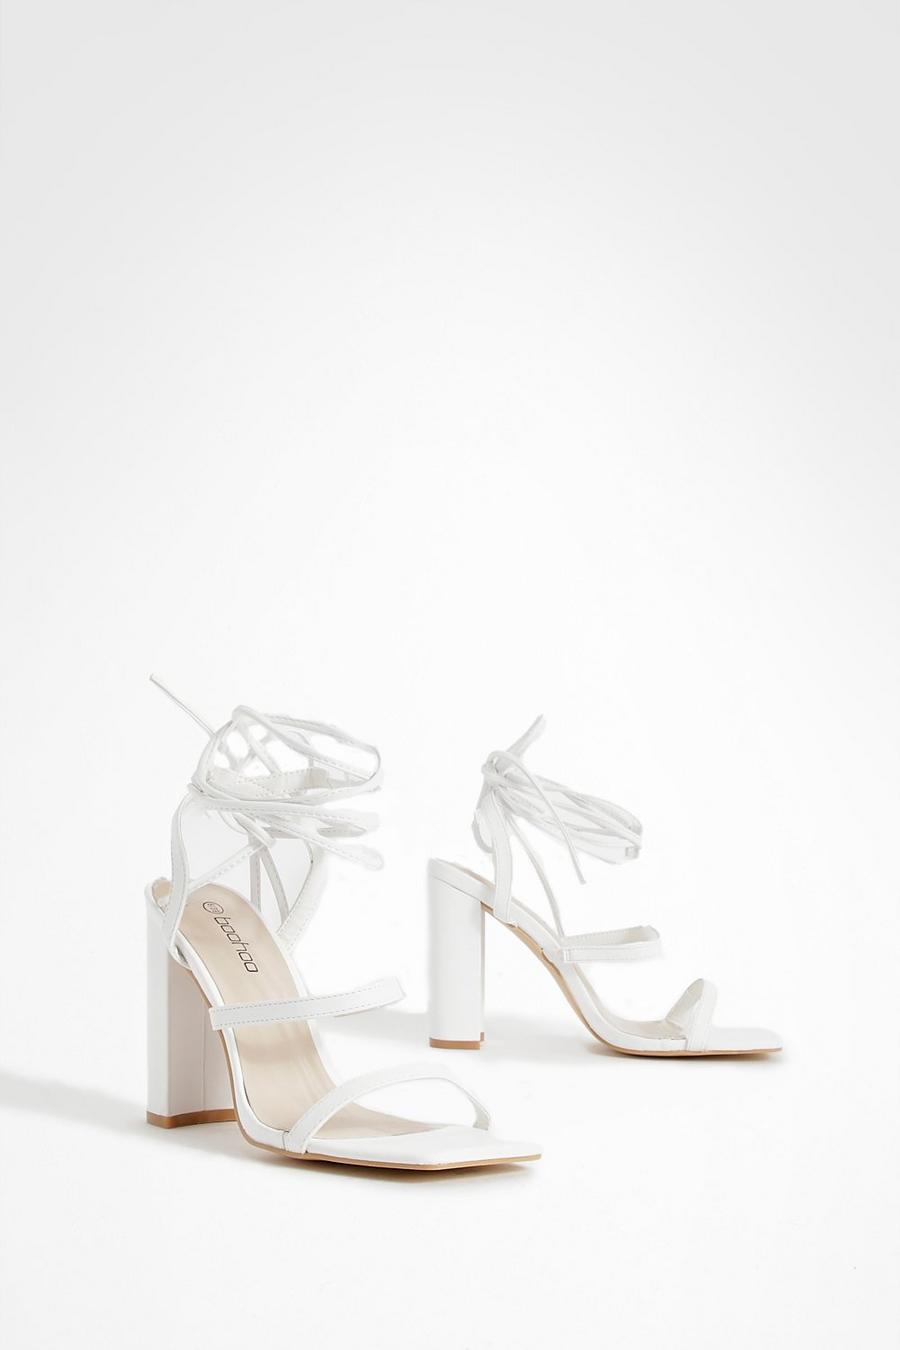 Sandales à talons avec triple bride et lacets montants, White blanc